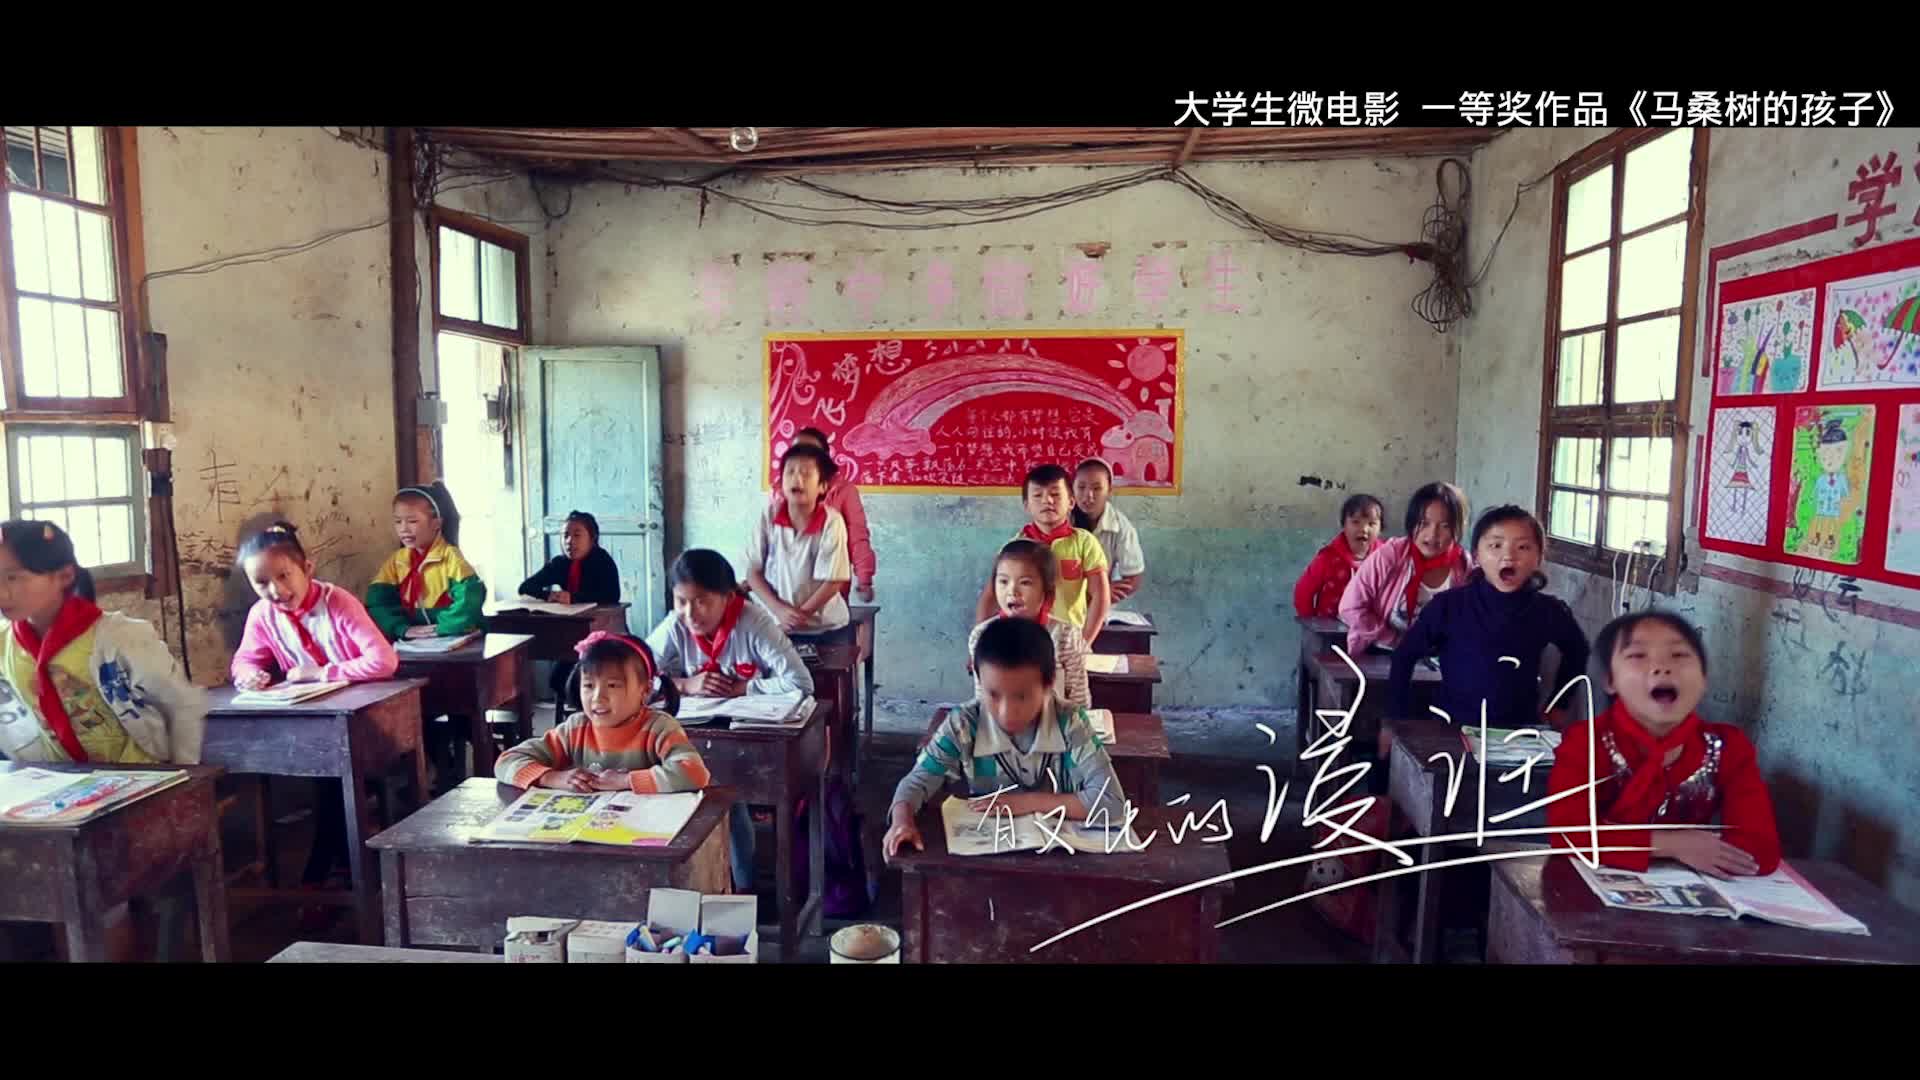 [视频]湖南省第三届网络原创视听节目大赛宣传片